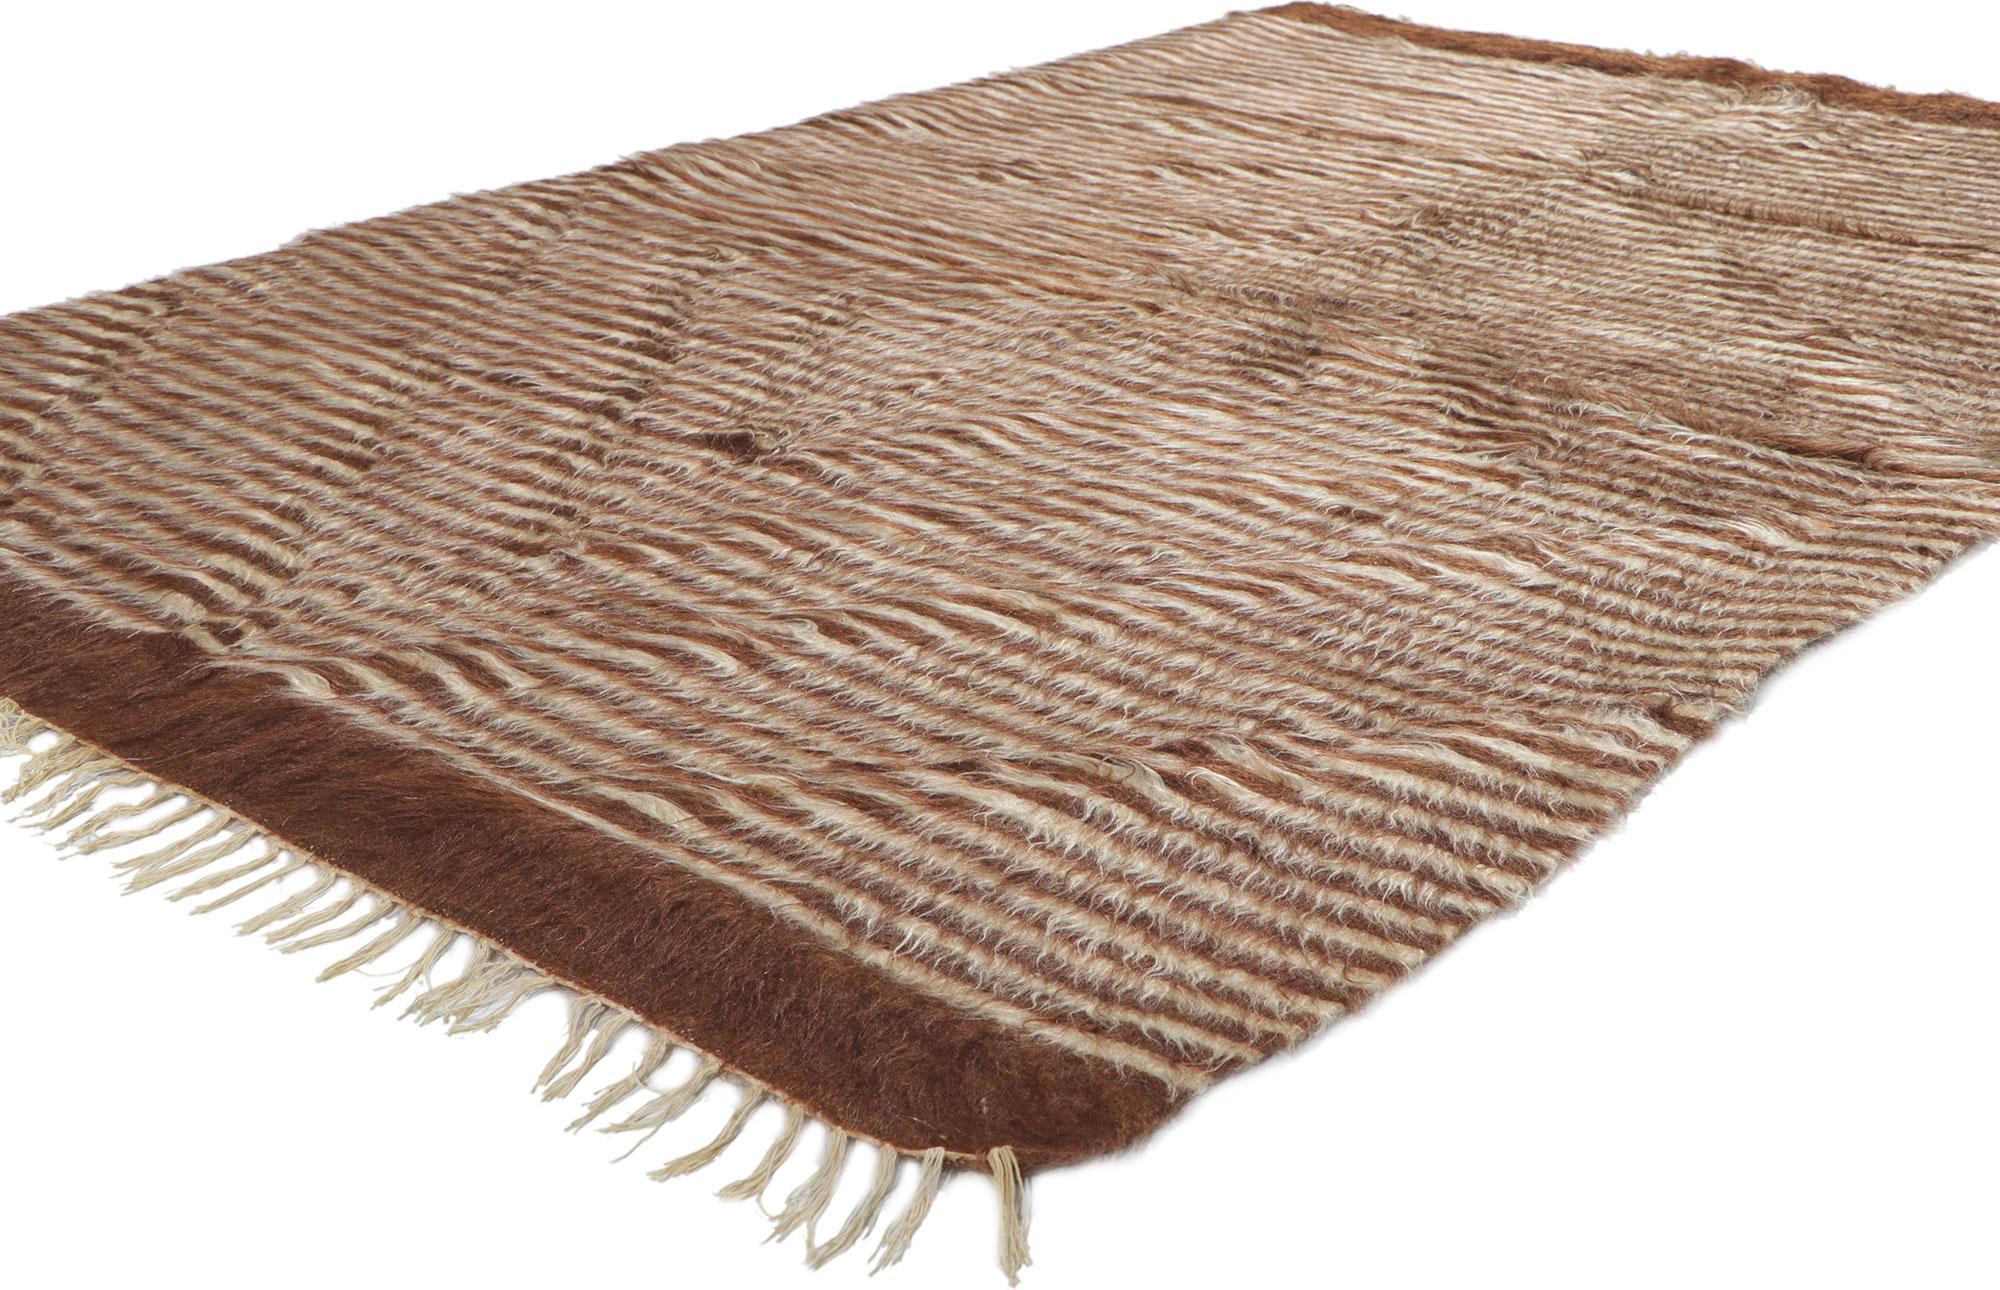 53845 Tapis de couverture turc vintage en laine angora Kilim, 04'04 x 06'06. Avec ses poils hirsutes, ses détails et sa texture incroyables, ce tapis turc angora kilim tissé à la main est une vision captivante de la beauté tissée. Le motif à rayures